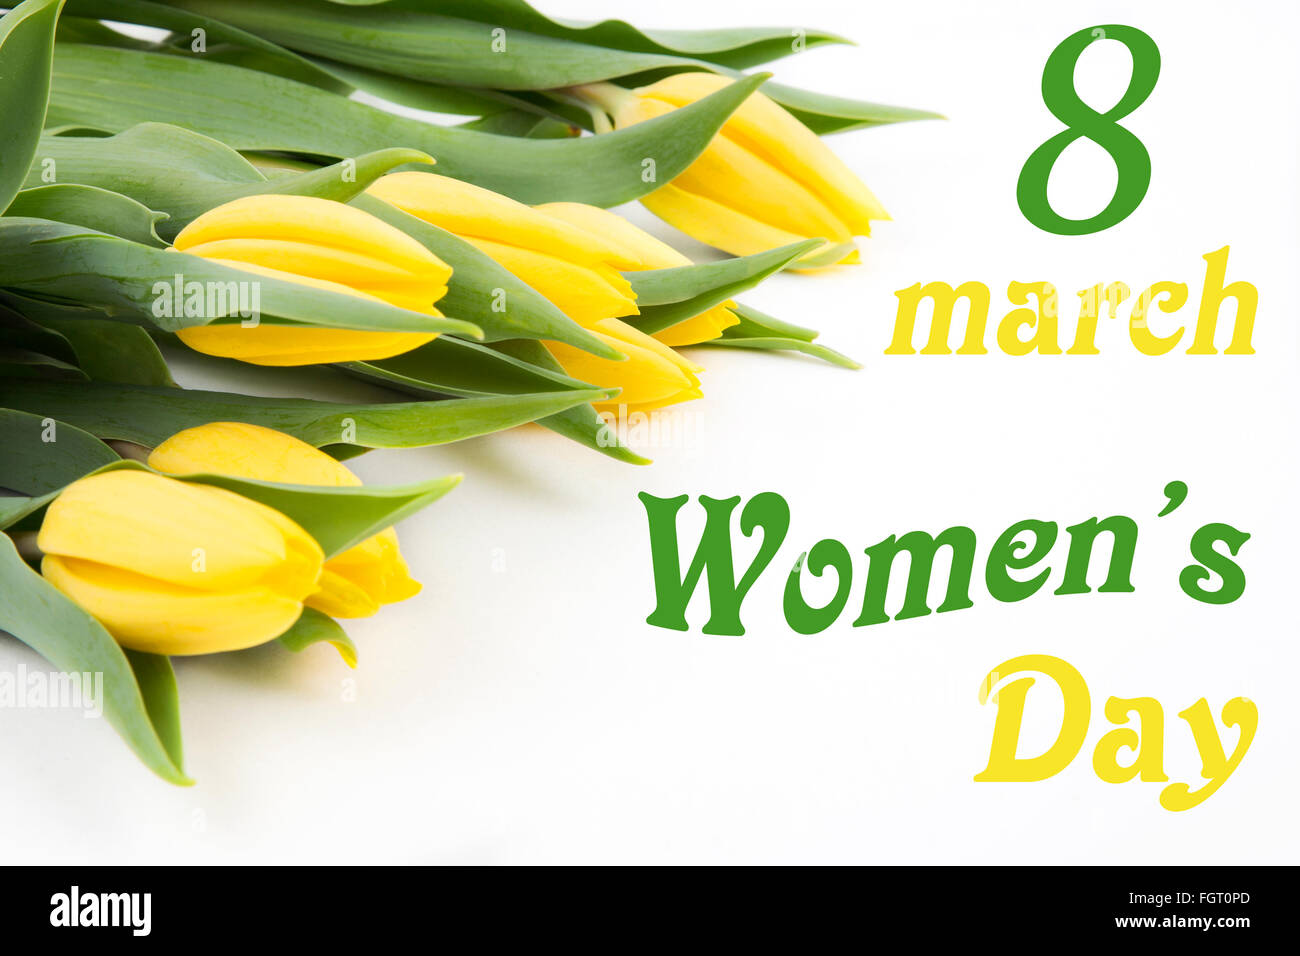 Heureux jour Femmes - tulipes jaunes sur fond blanc Banque D'Images